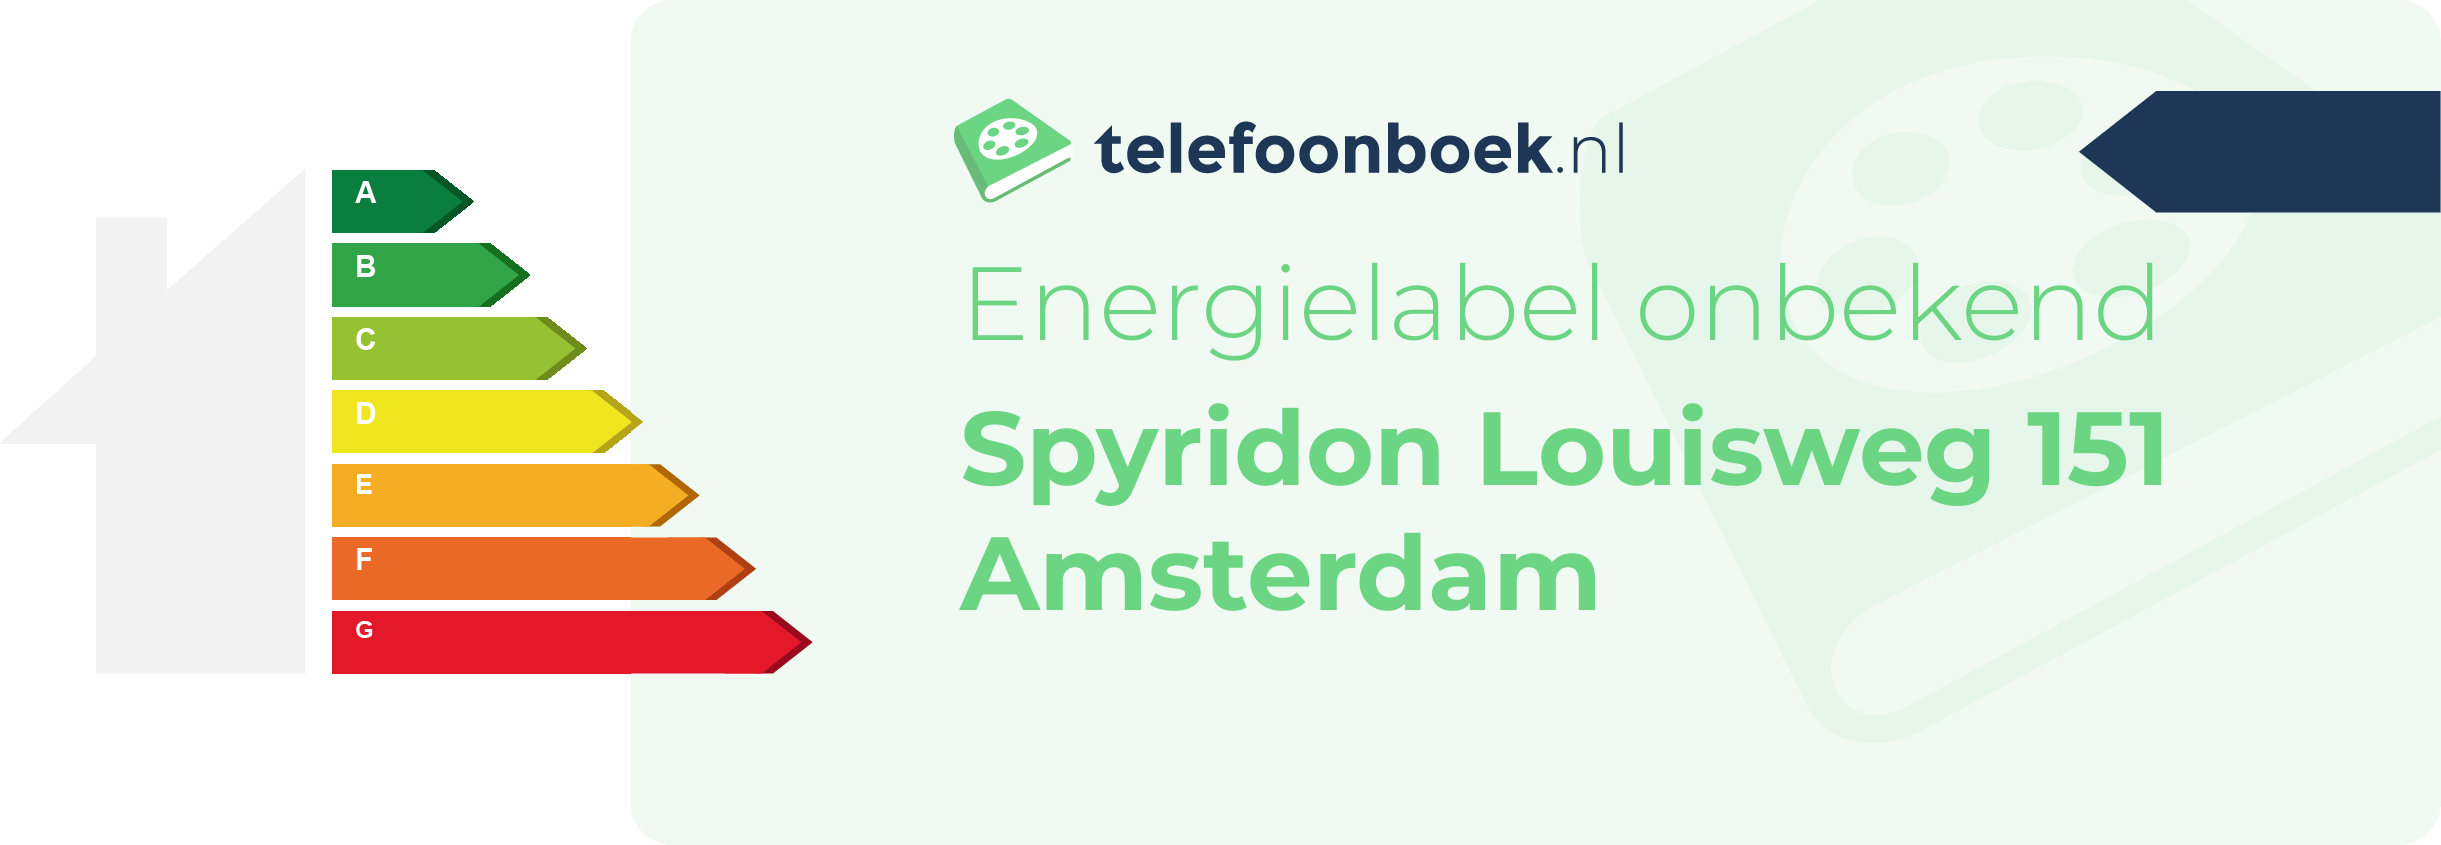 Energielabel Spyridon Louisweg 151 Amsterdam